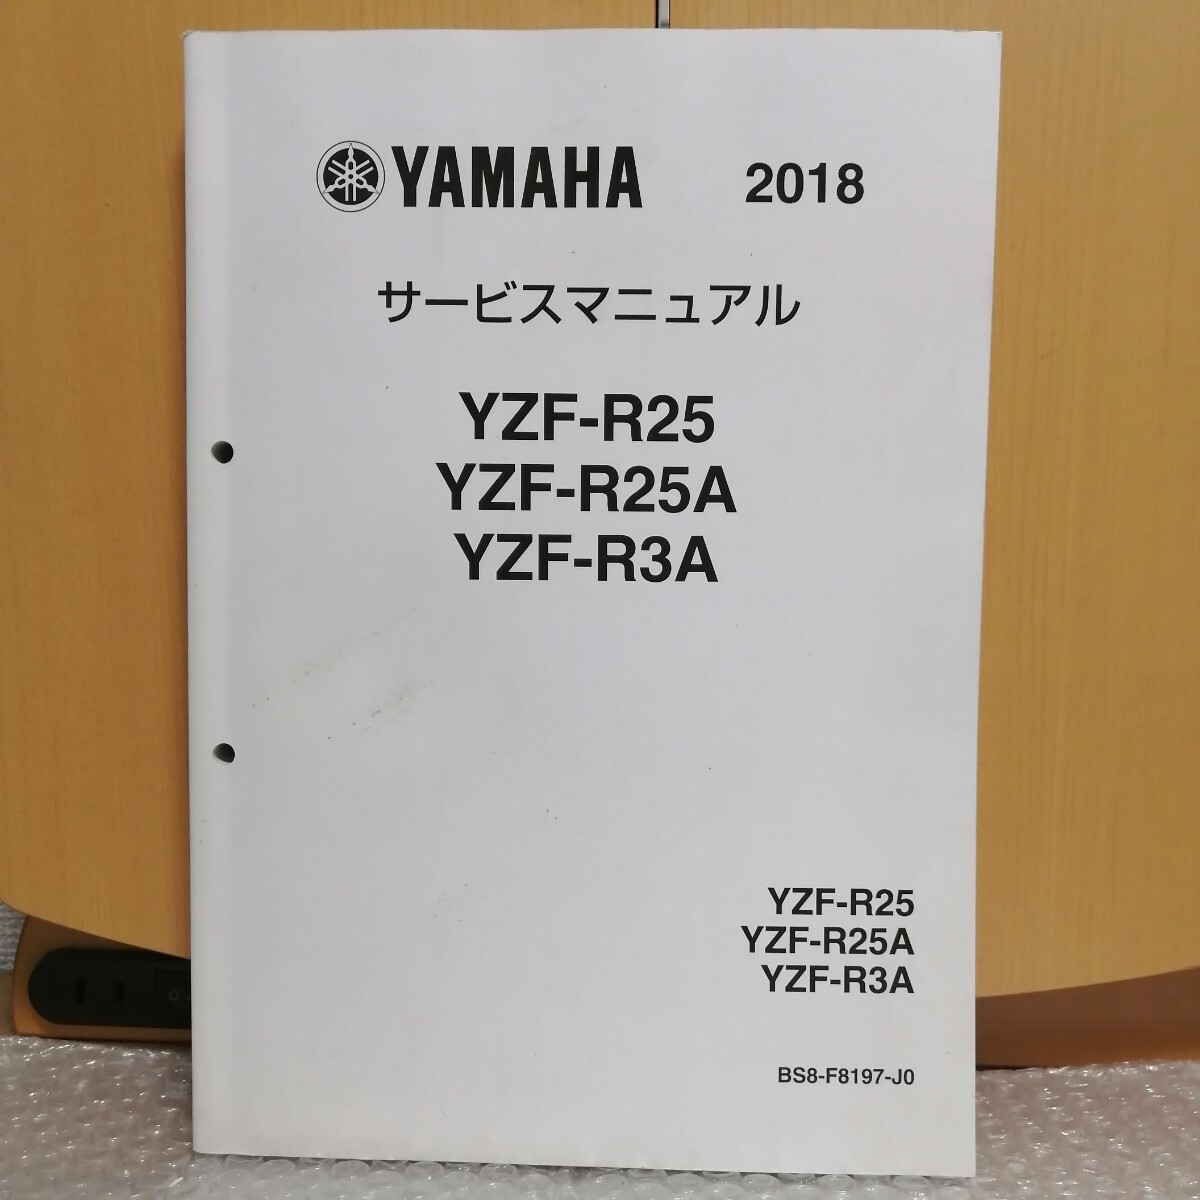  Yamaha YZF-R25/YZF-R25A/YZF-R3A service manual 2018 year B0E1/BS81/BR55 restore maintenance service book repair book 